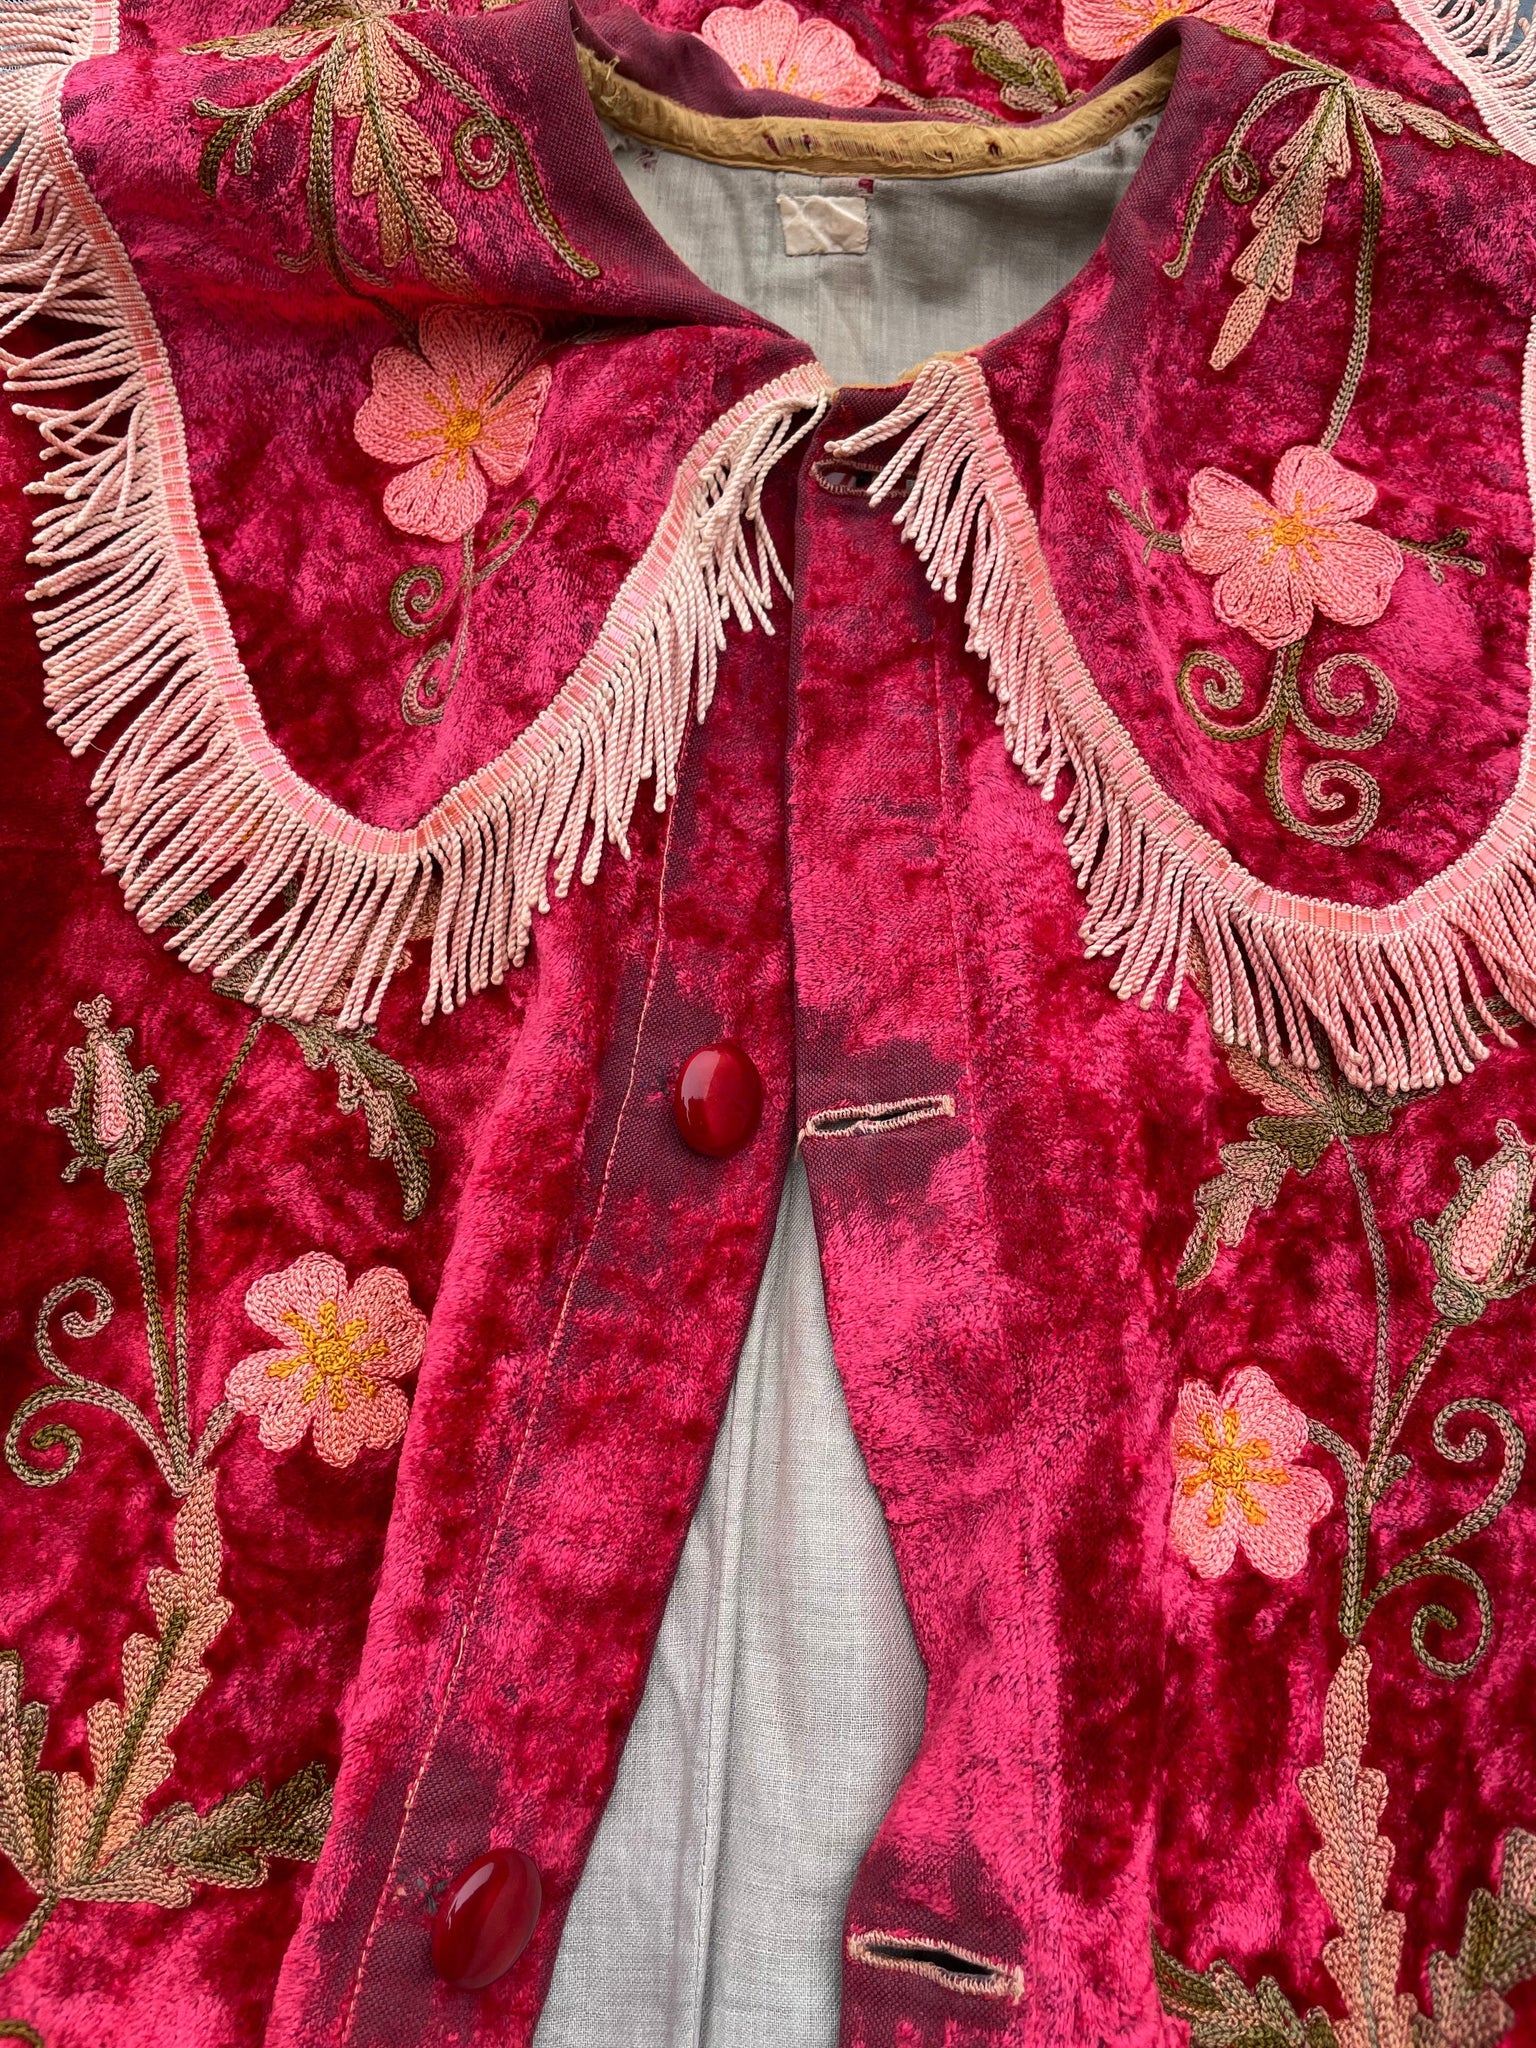 Antique Odd Fellows Grand Master Floral Velvet Robe